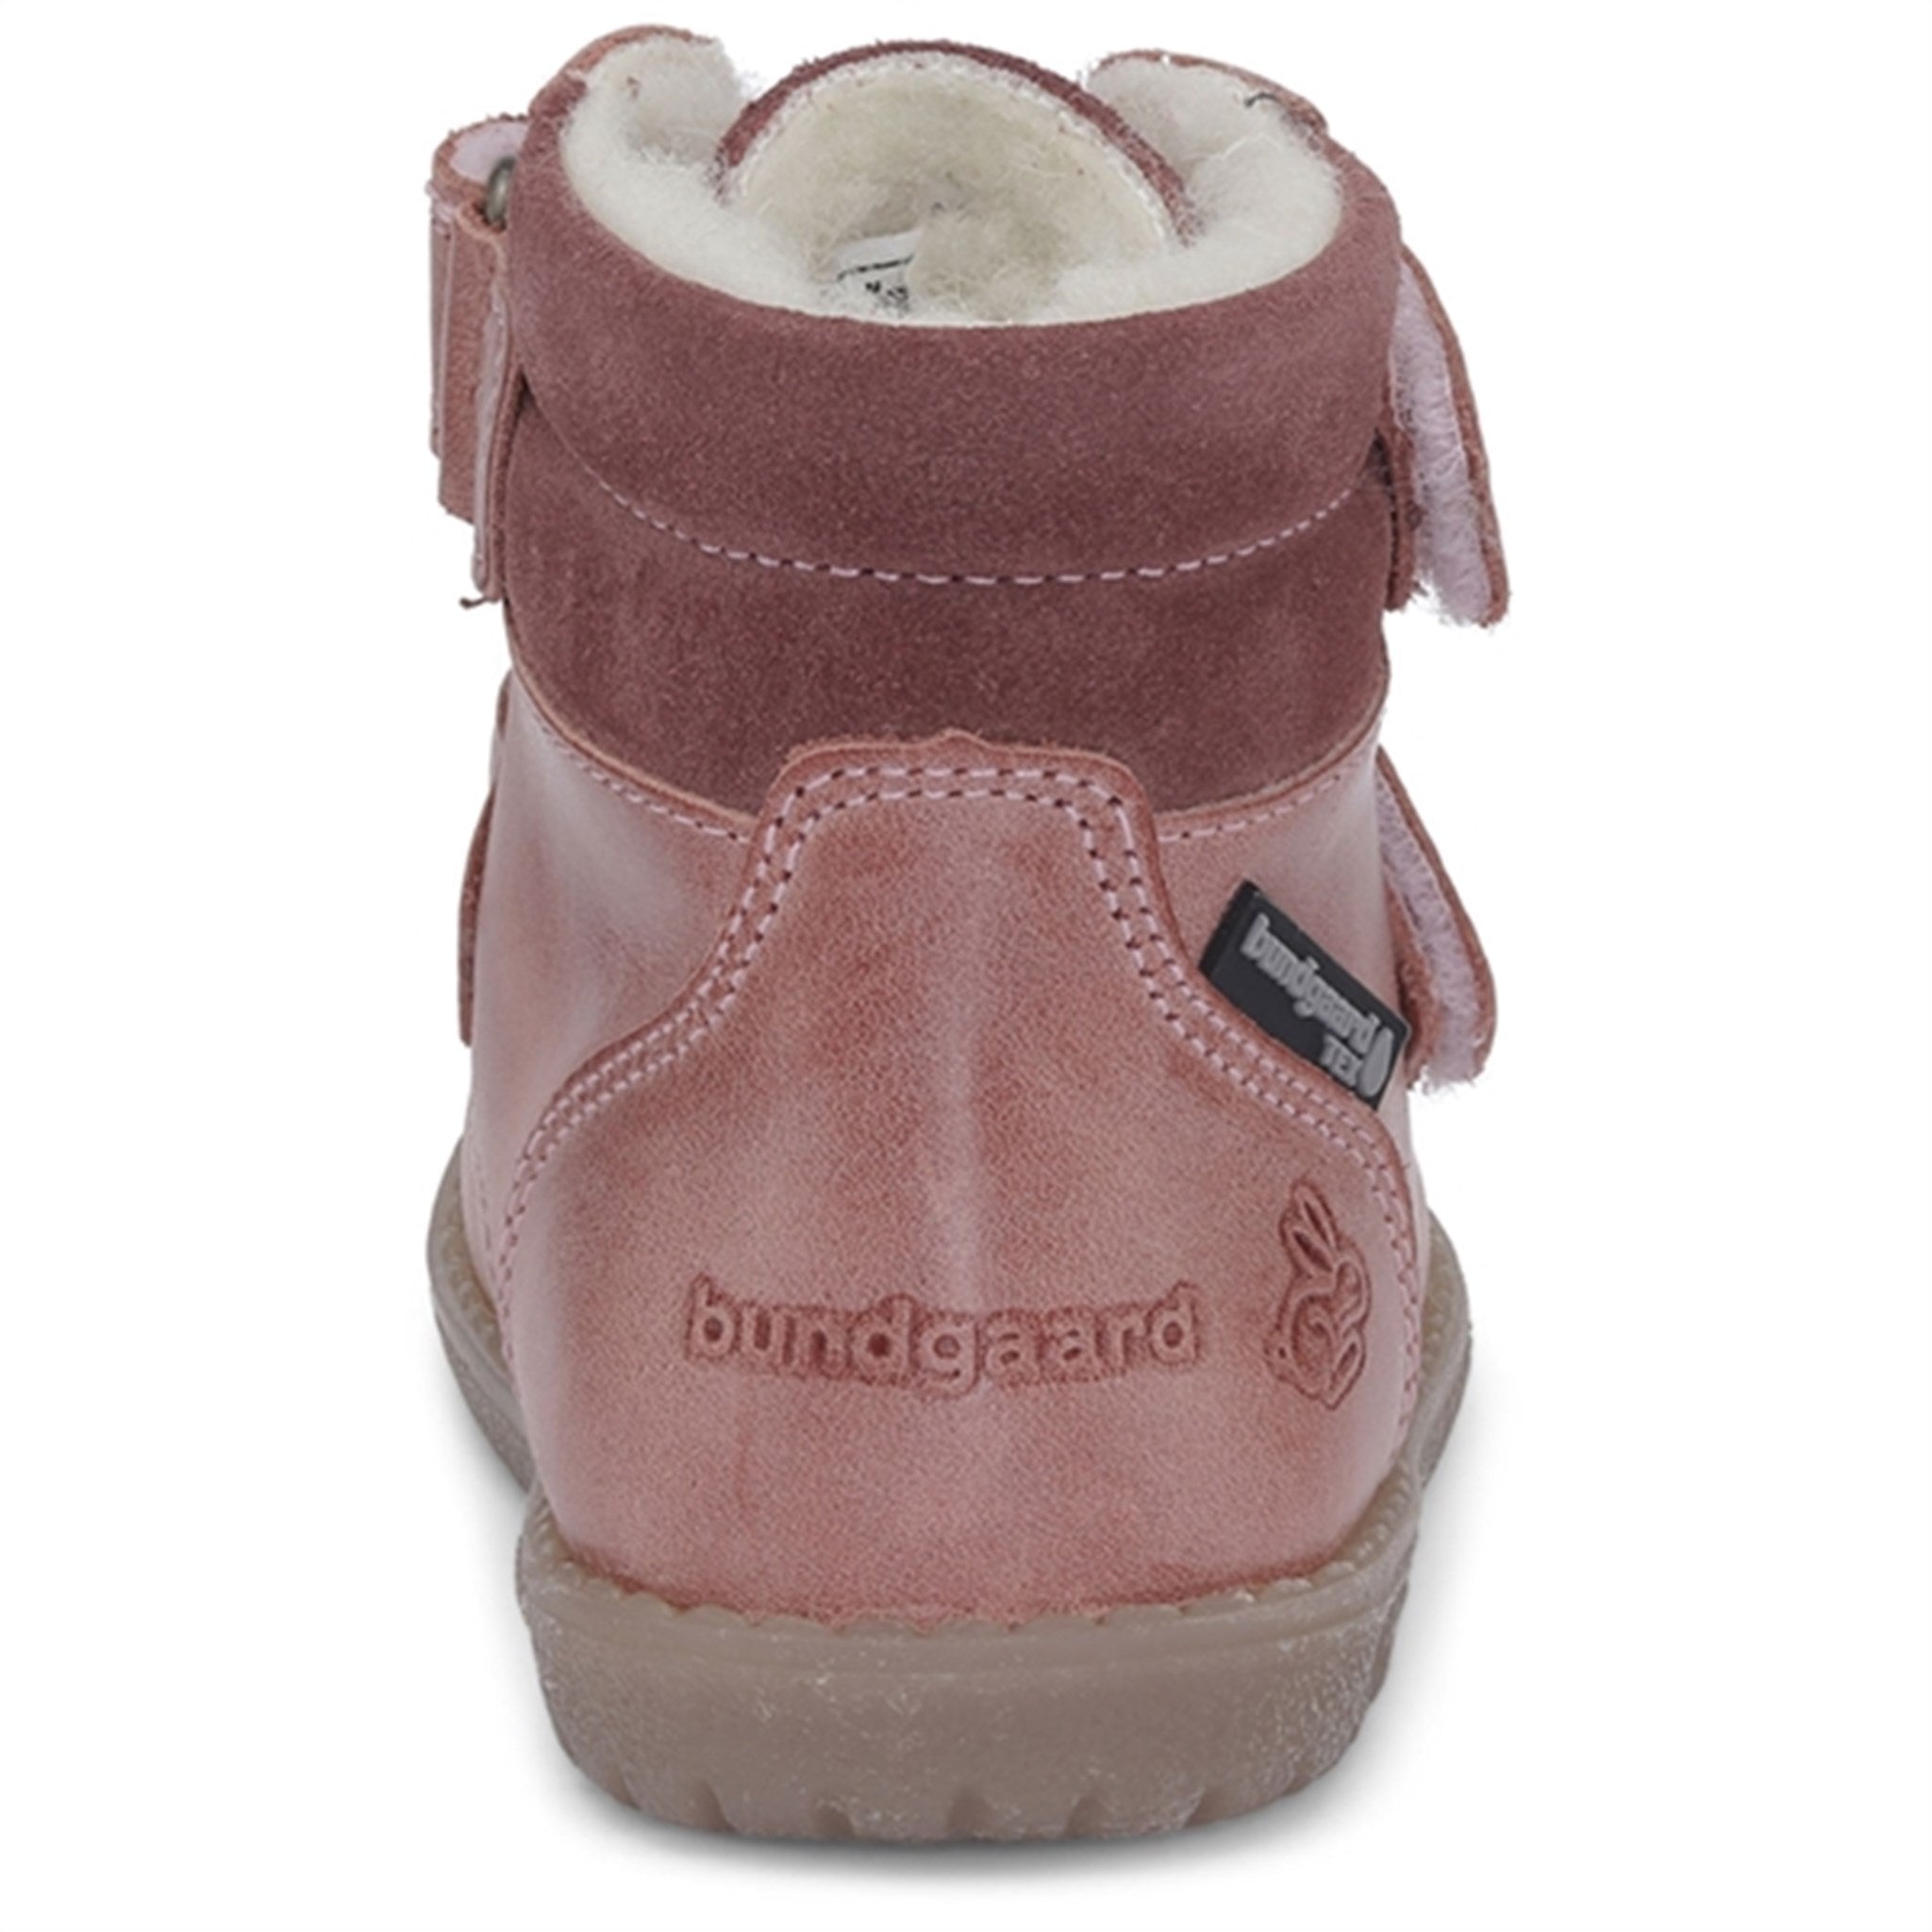 Bundgaard Rabbit Strap TEX Winter Boots Old Rose WS 3